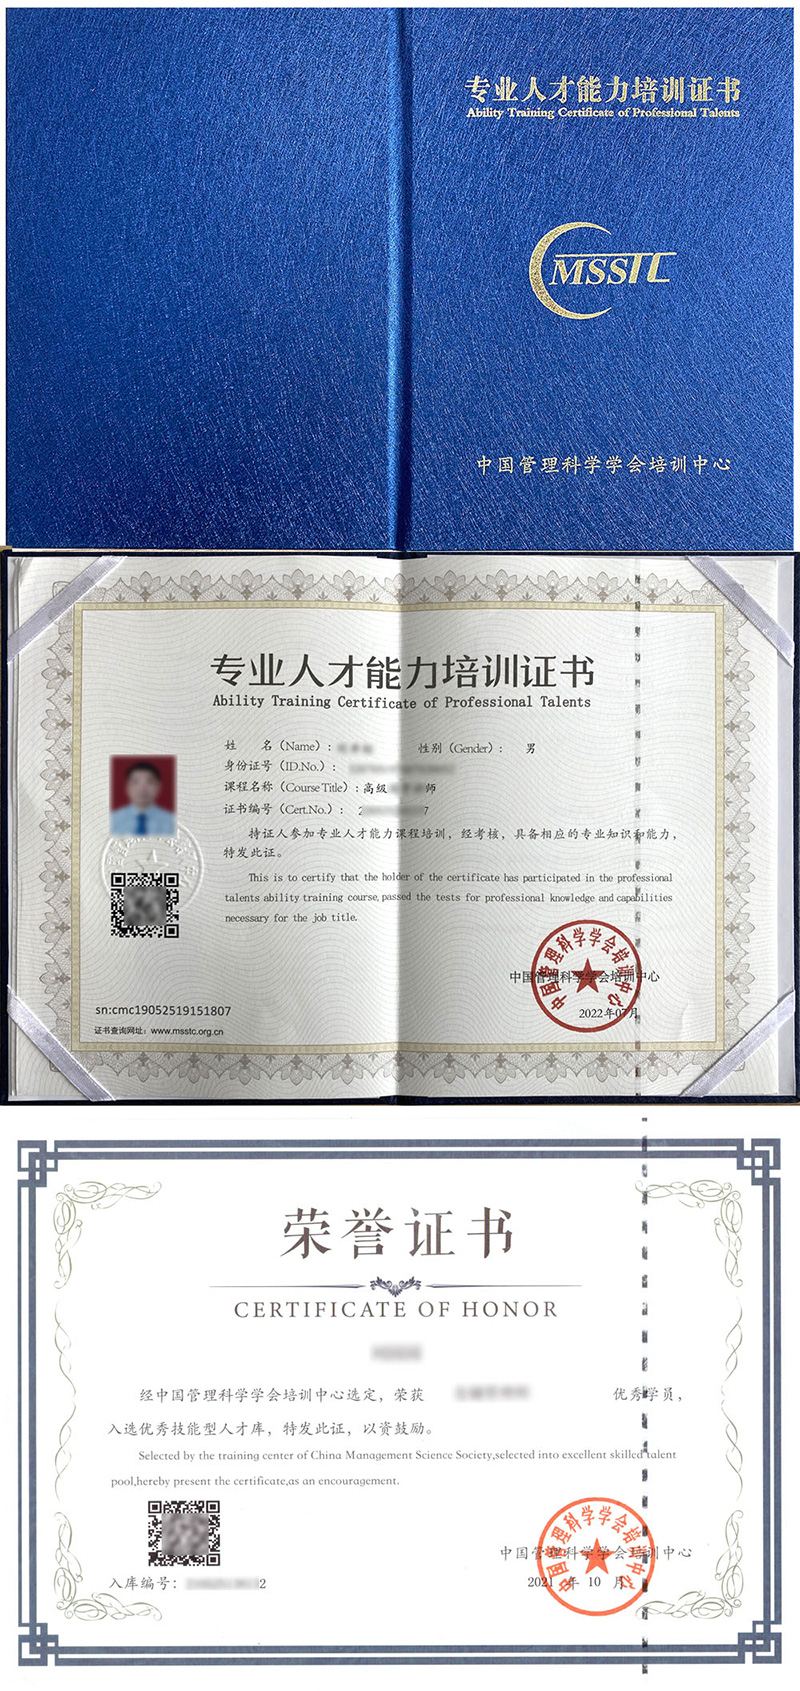 中国管理科学学会培训中心 专业人才能力培训证书 瑜伽指导师证证书样本